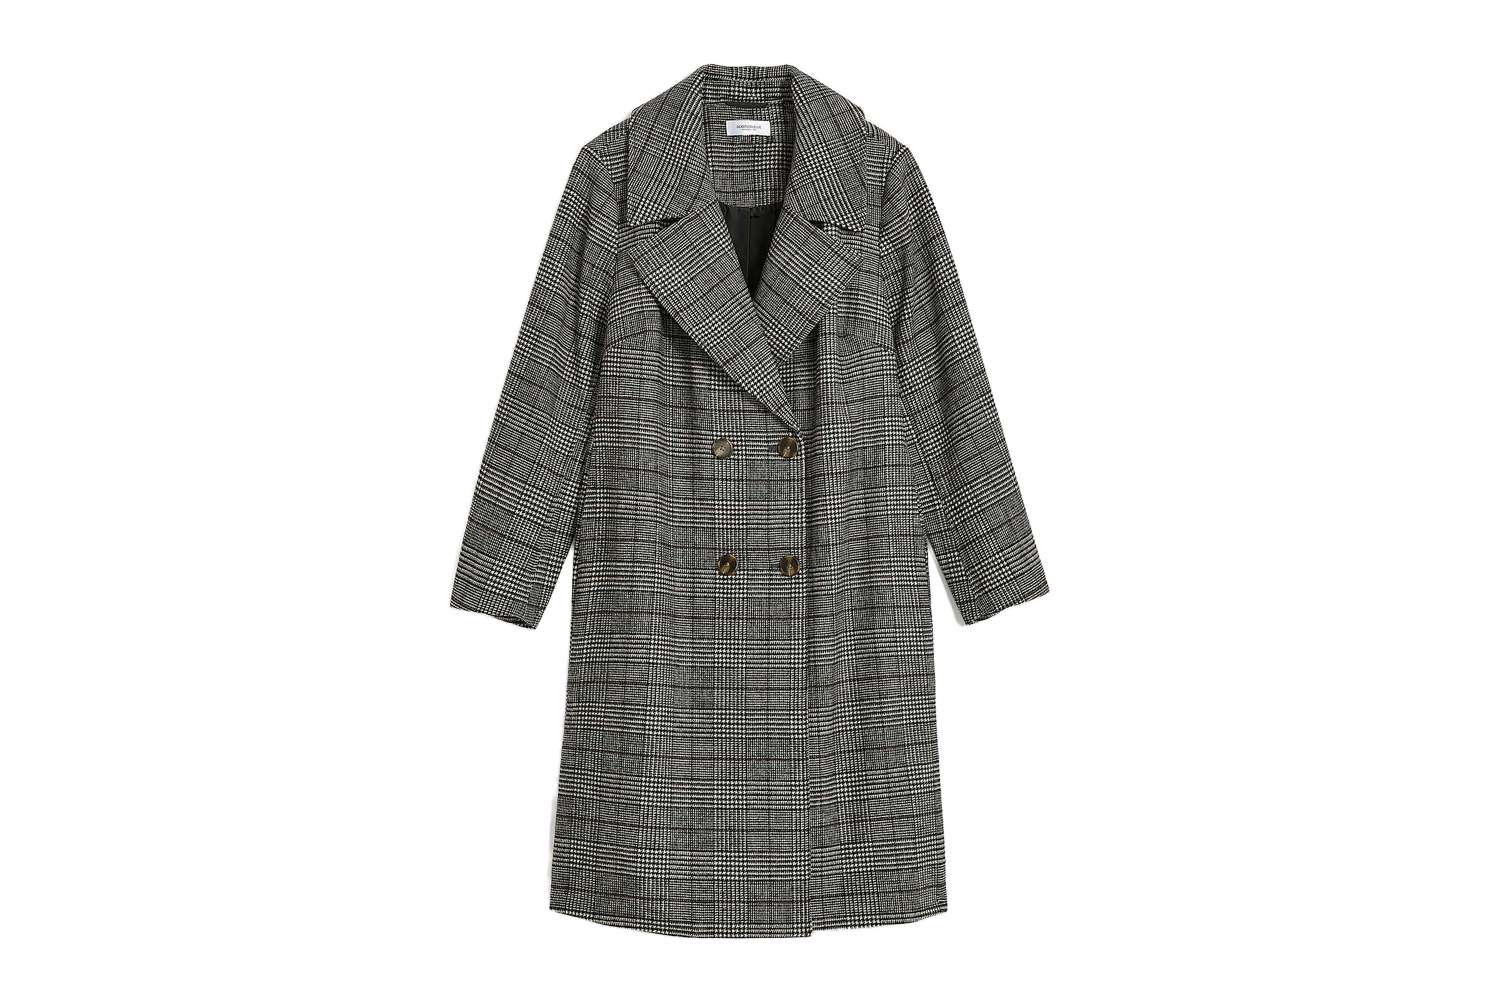 Adição Elle xadrez com casaco de mistura de lã dupla e dupla